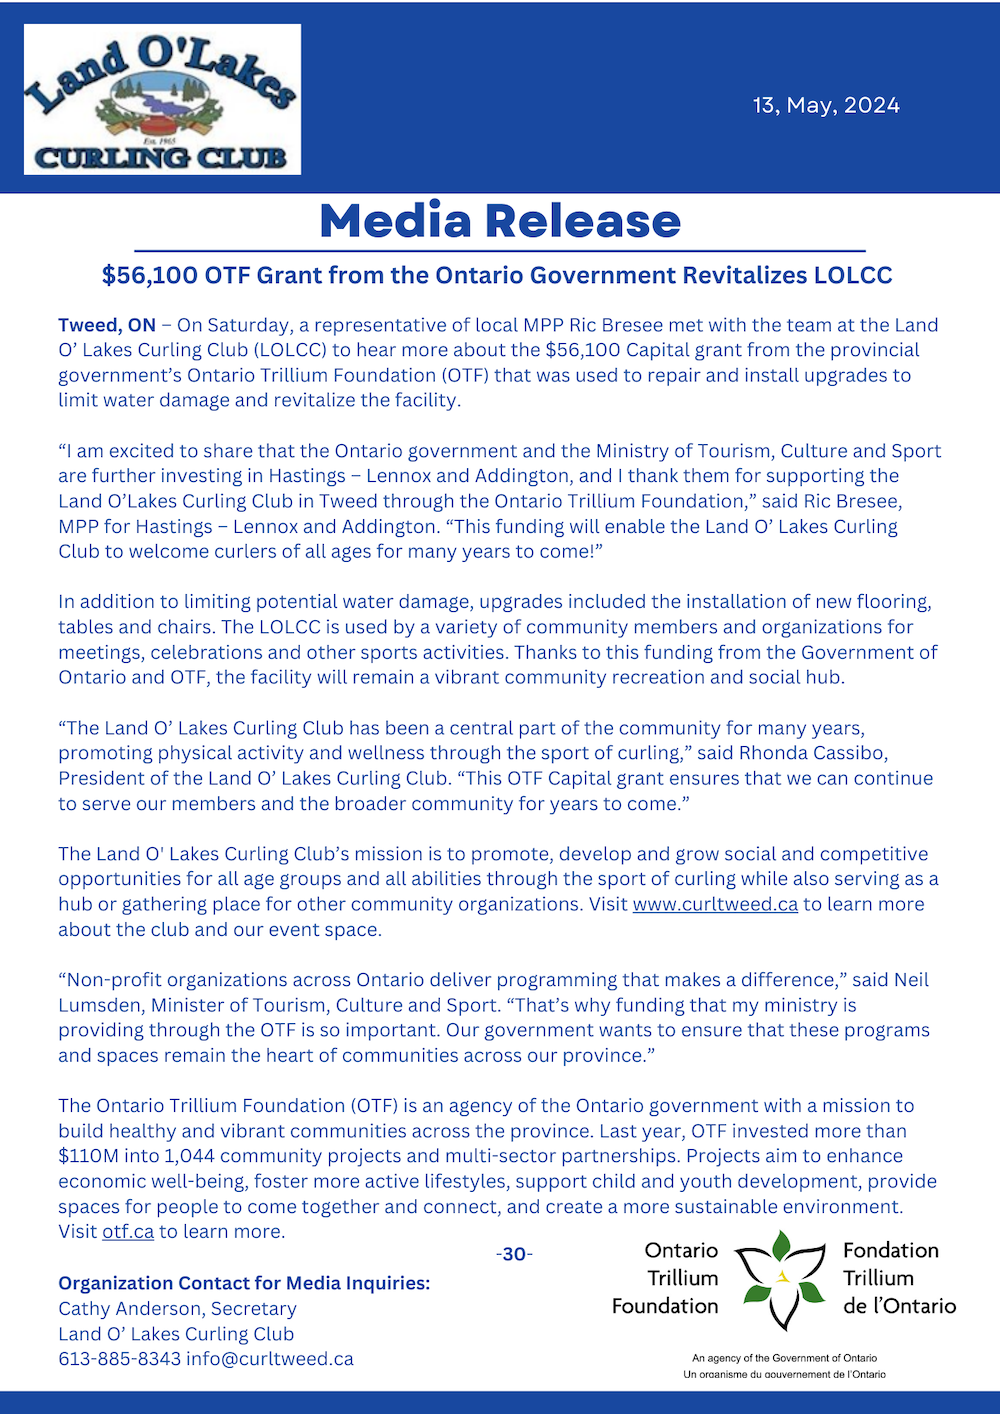 LOLCC OTF GRANT Press Release